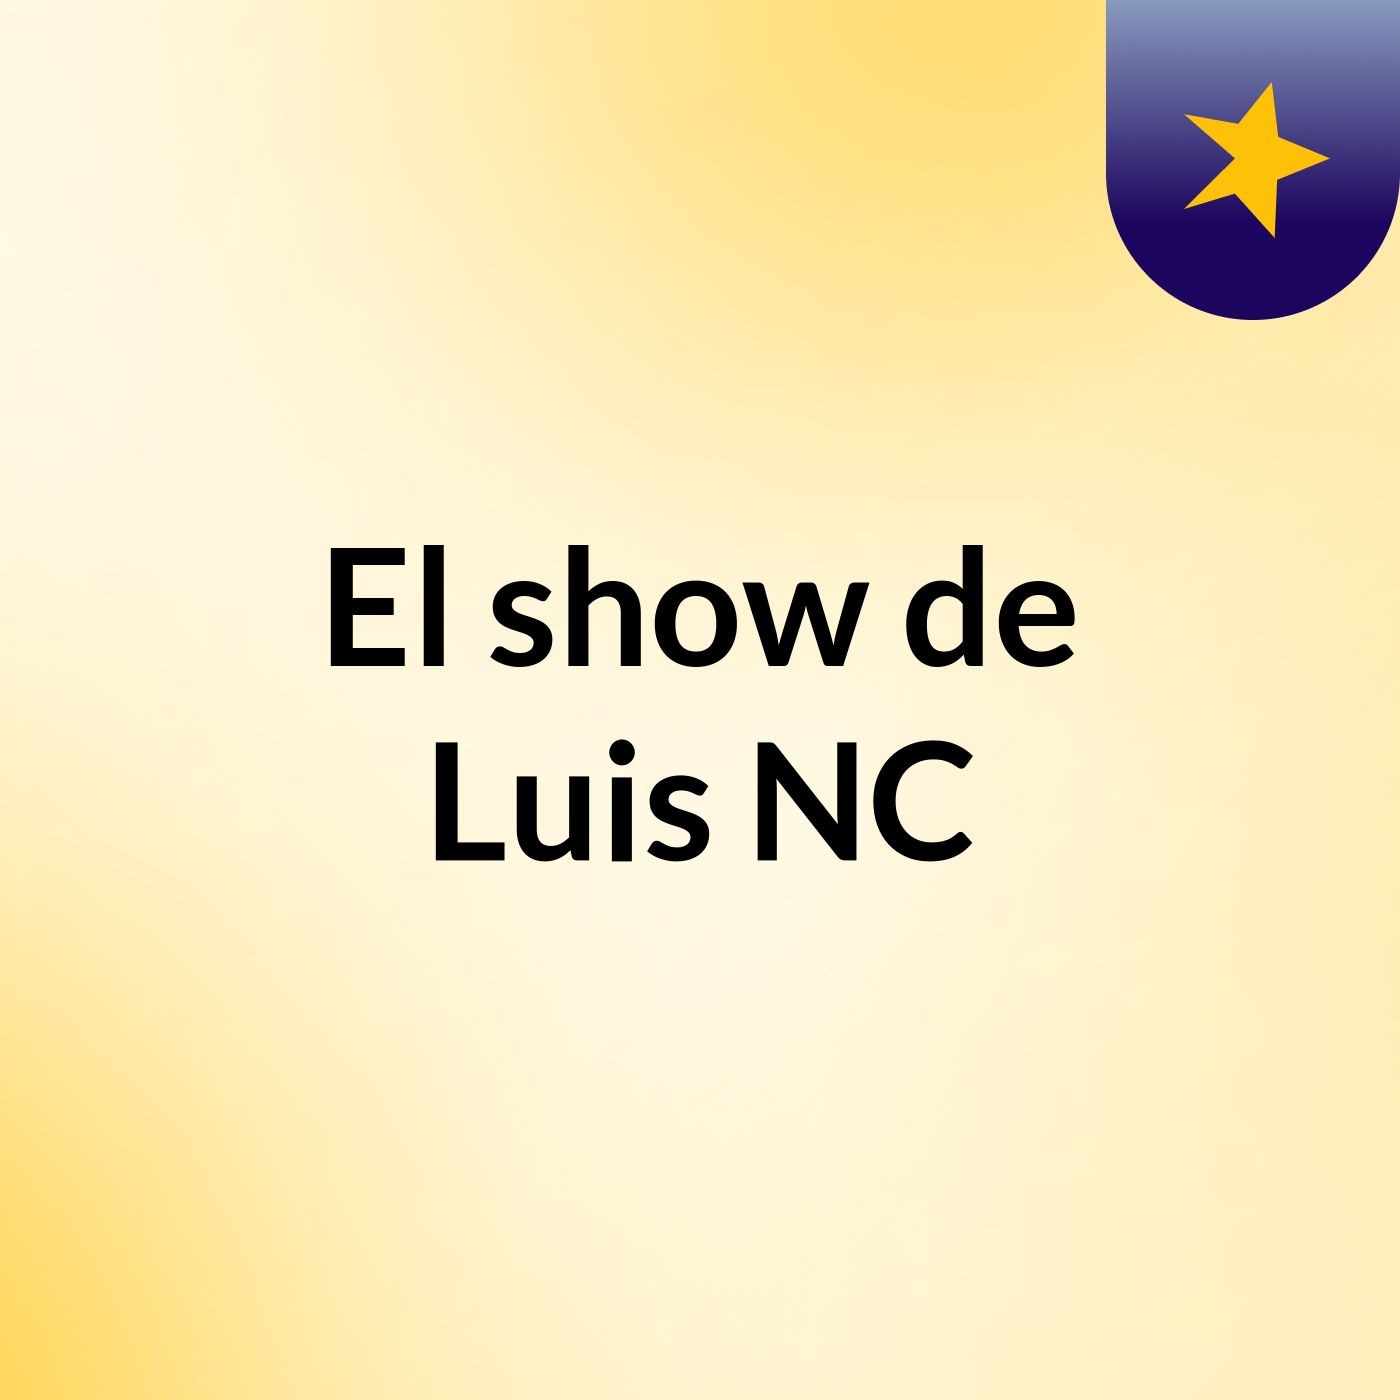 El show de Luis NC